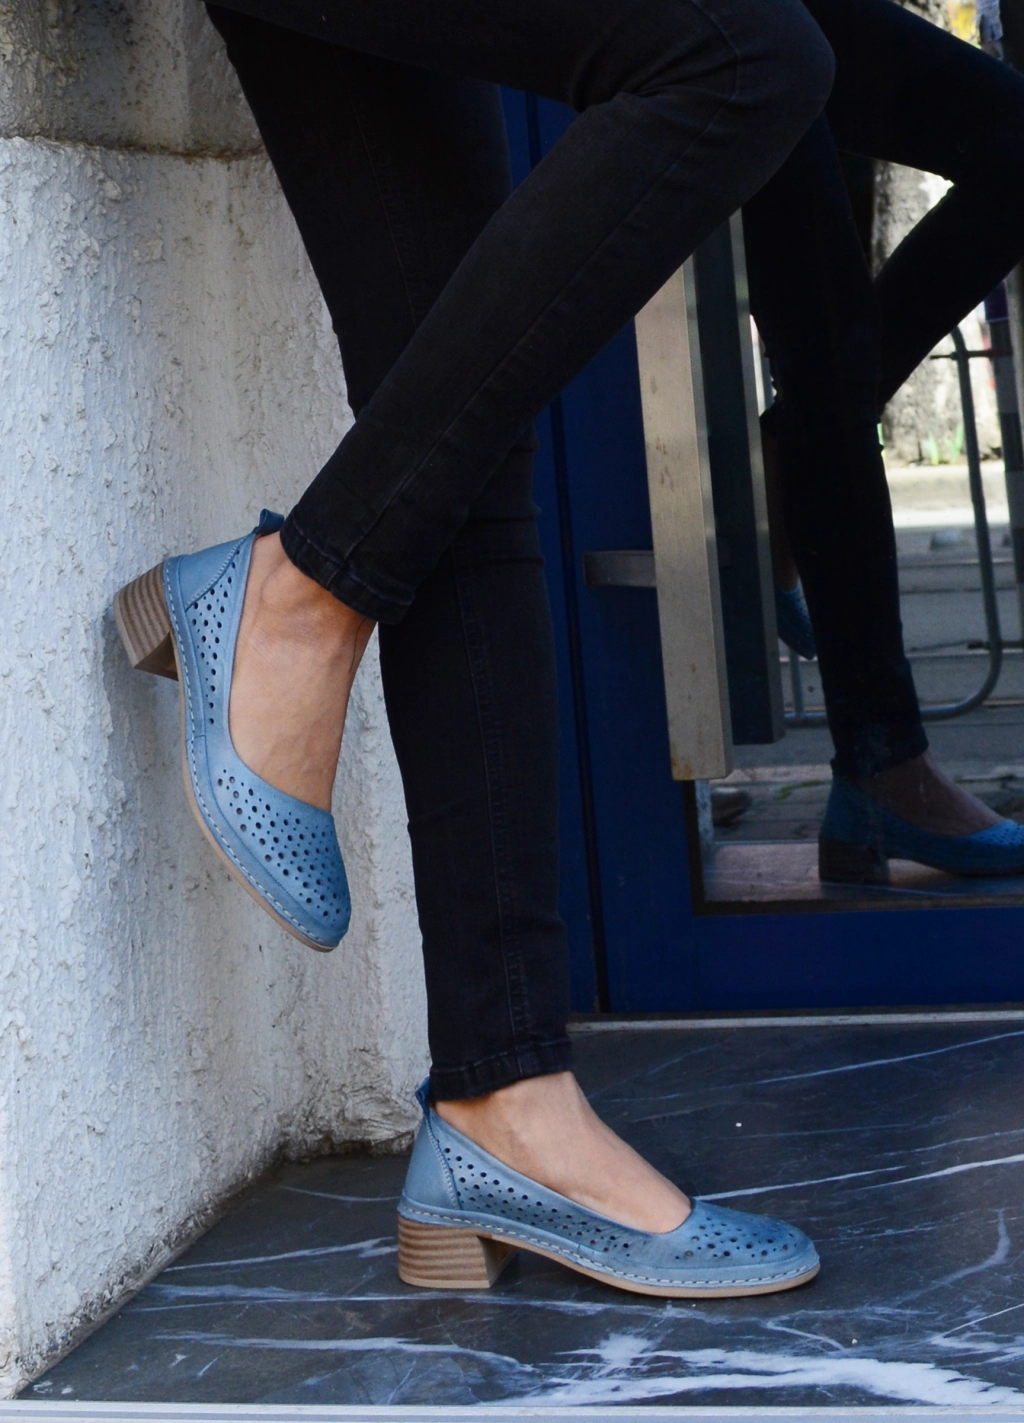 Дамски сини пролетно летни обувки на нисък ток